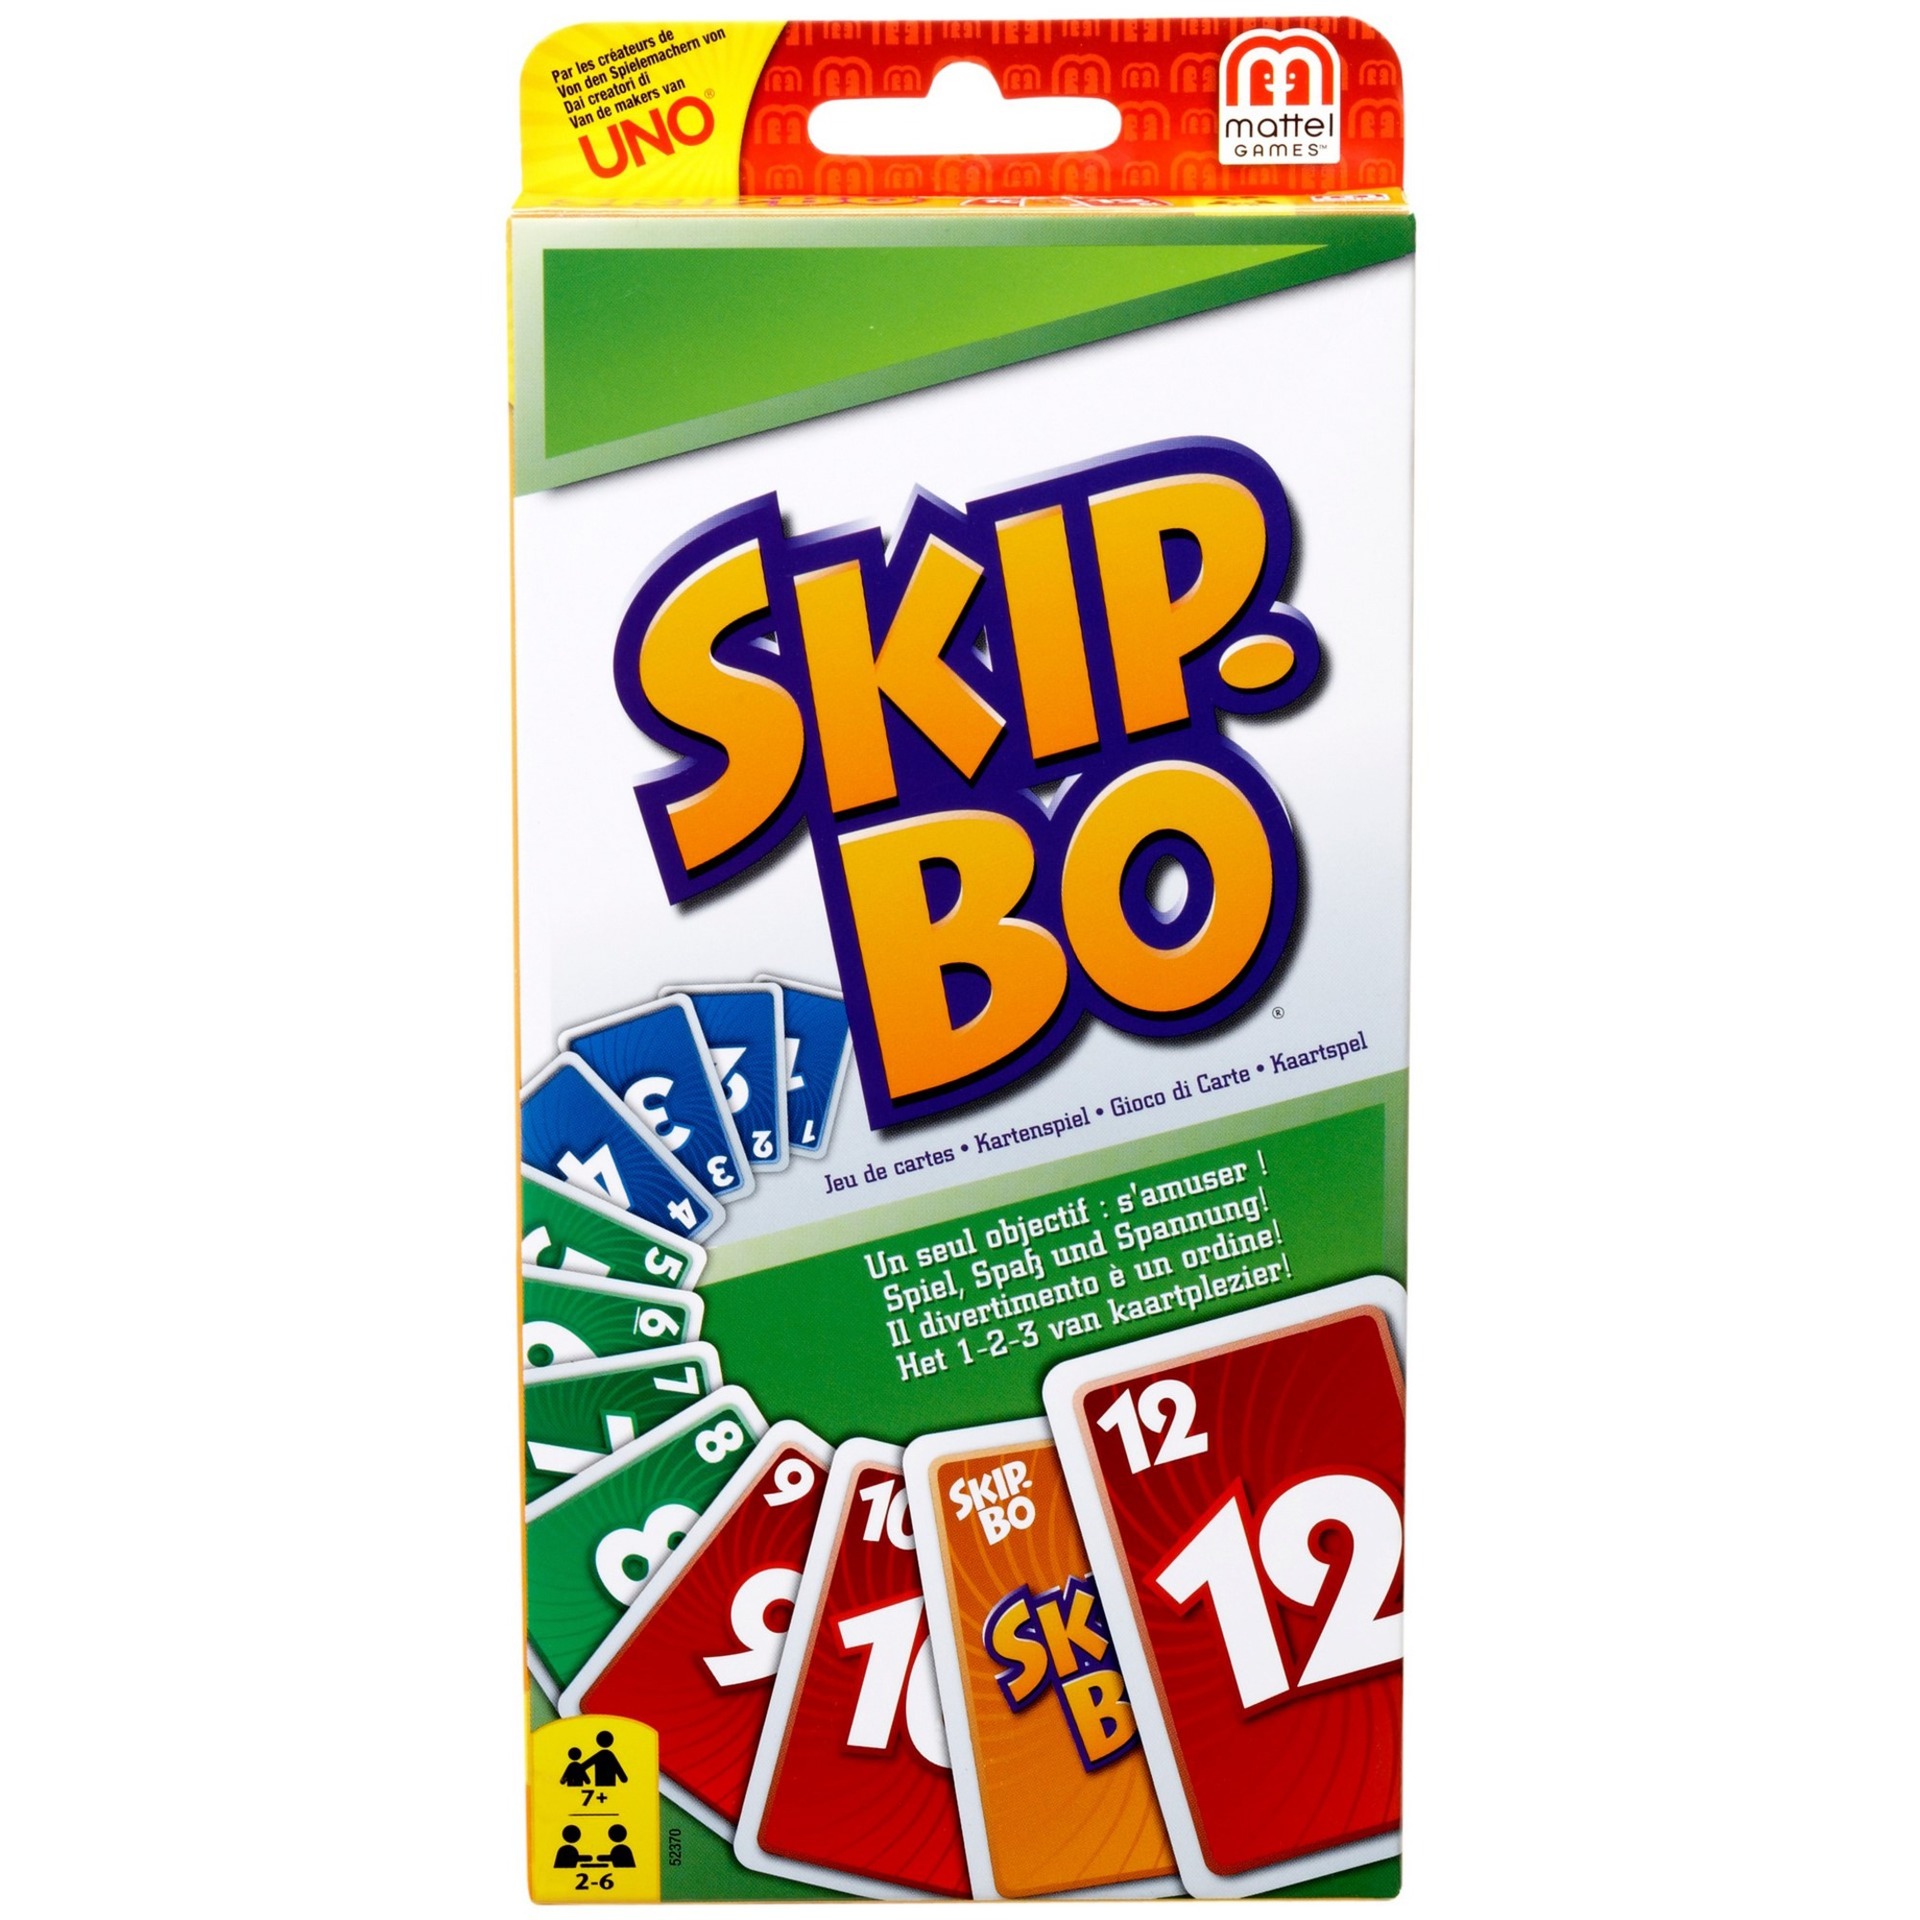 Image of Alternate - Skip-Bo, Kartenspiel online einkaufen bei Alternate